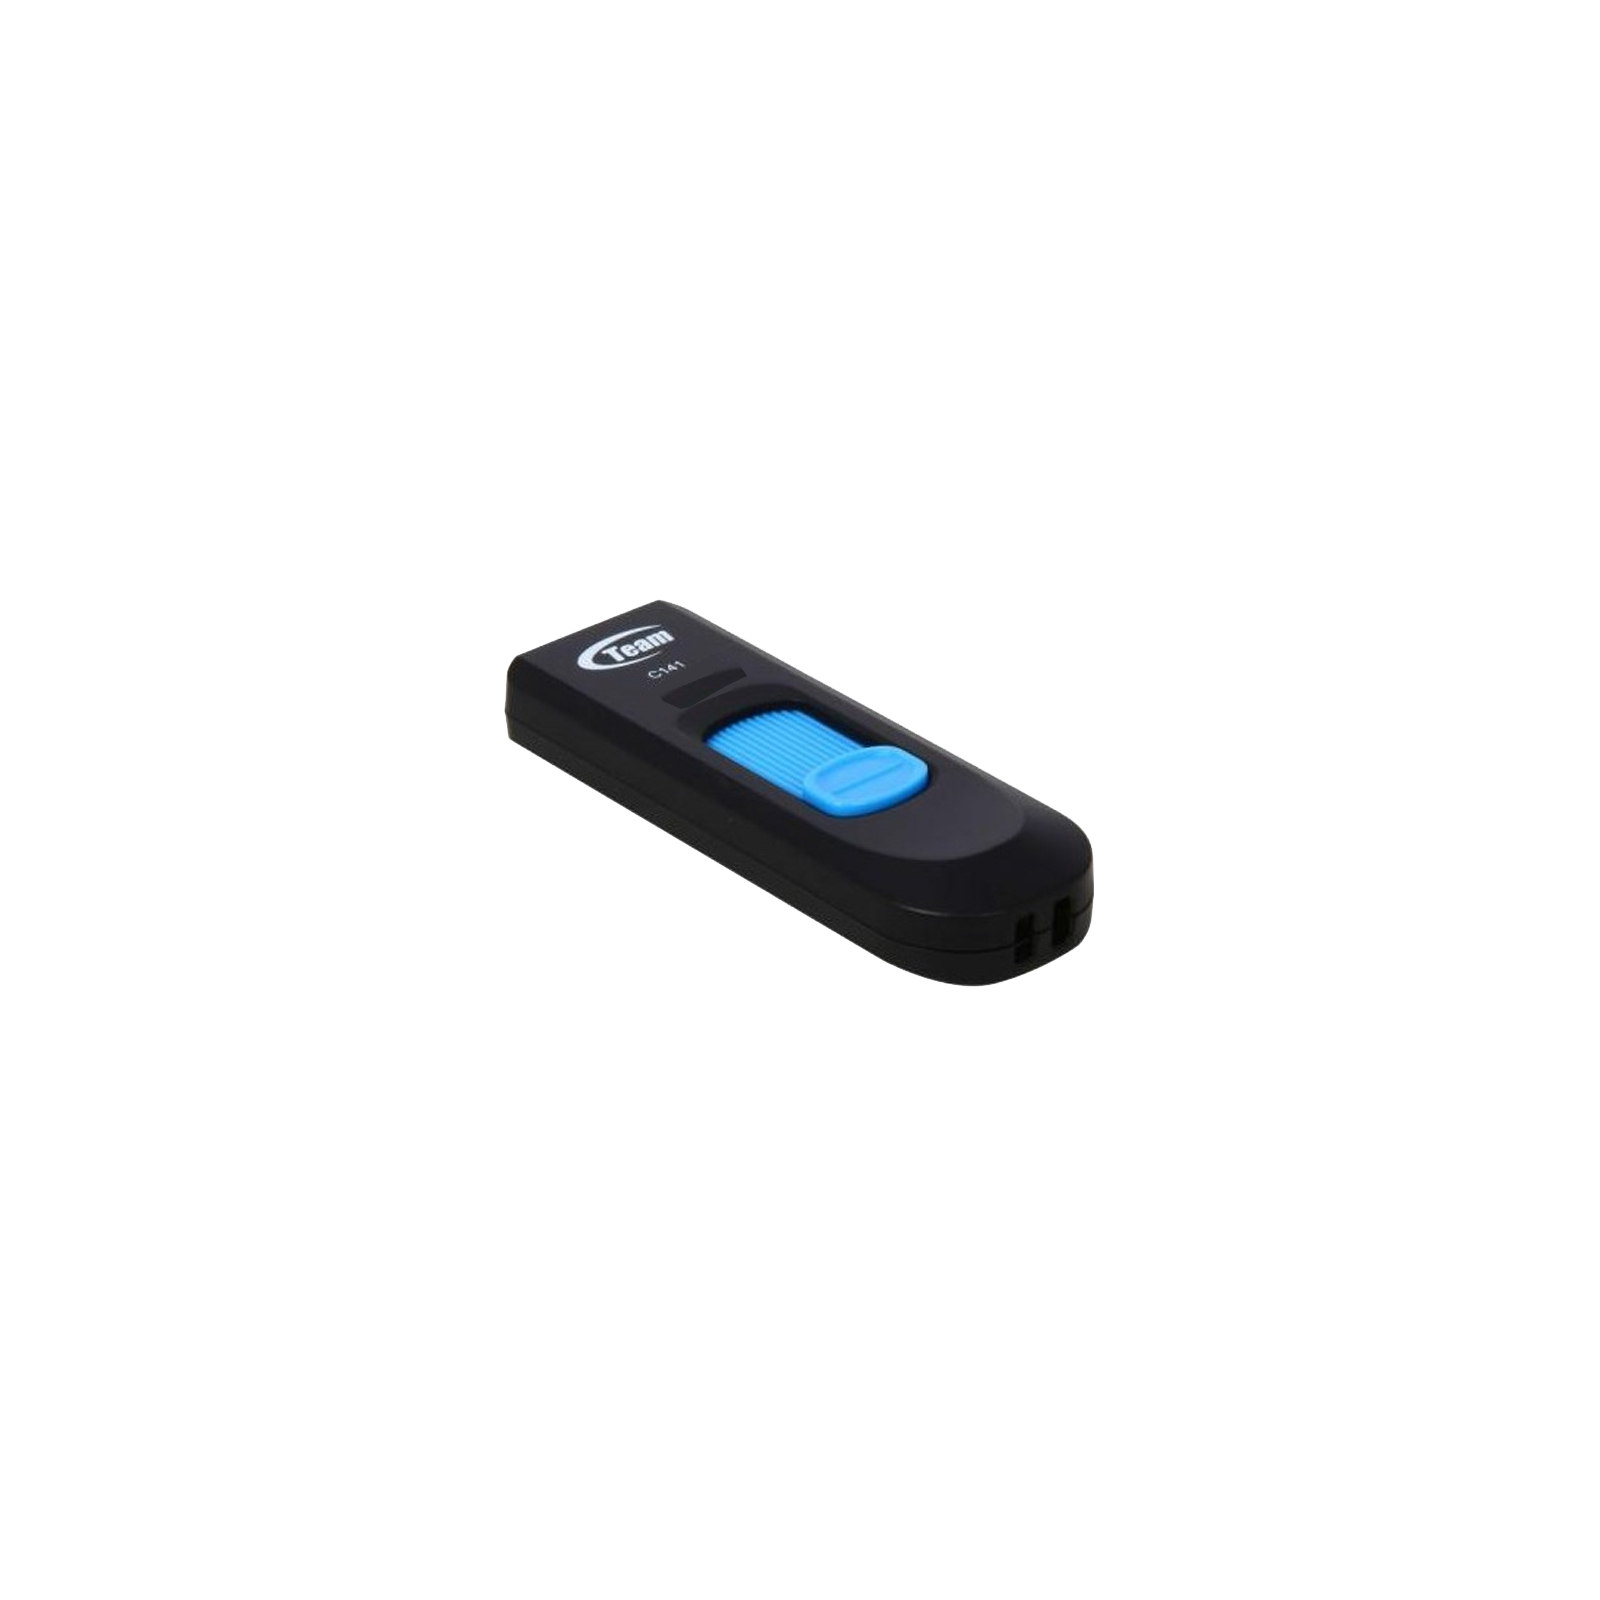 USB флеш накопитель Team 4GB C141 Blue USB 2.0 (TC1414GL01) изображение 2